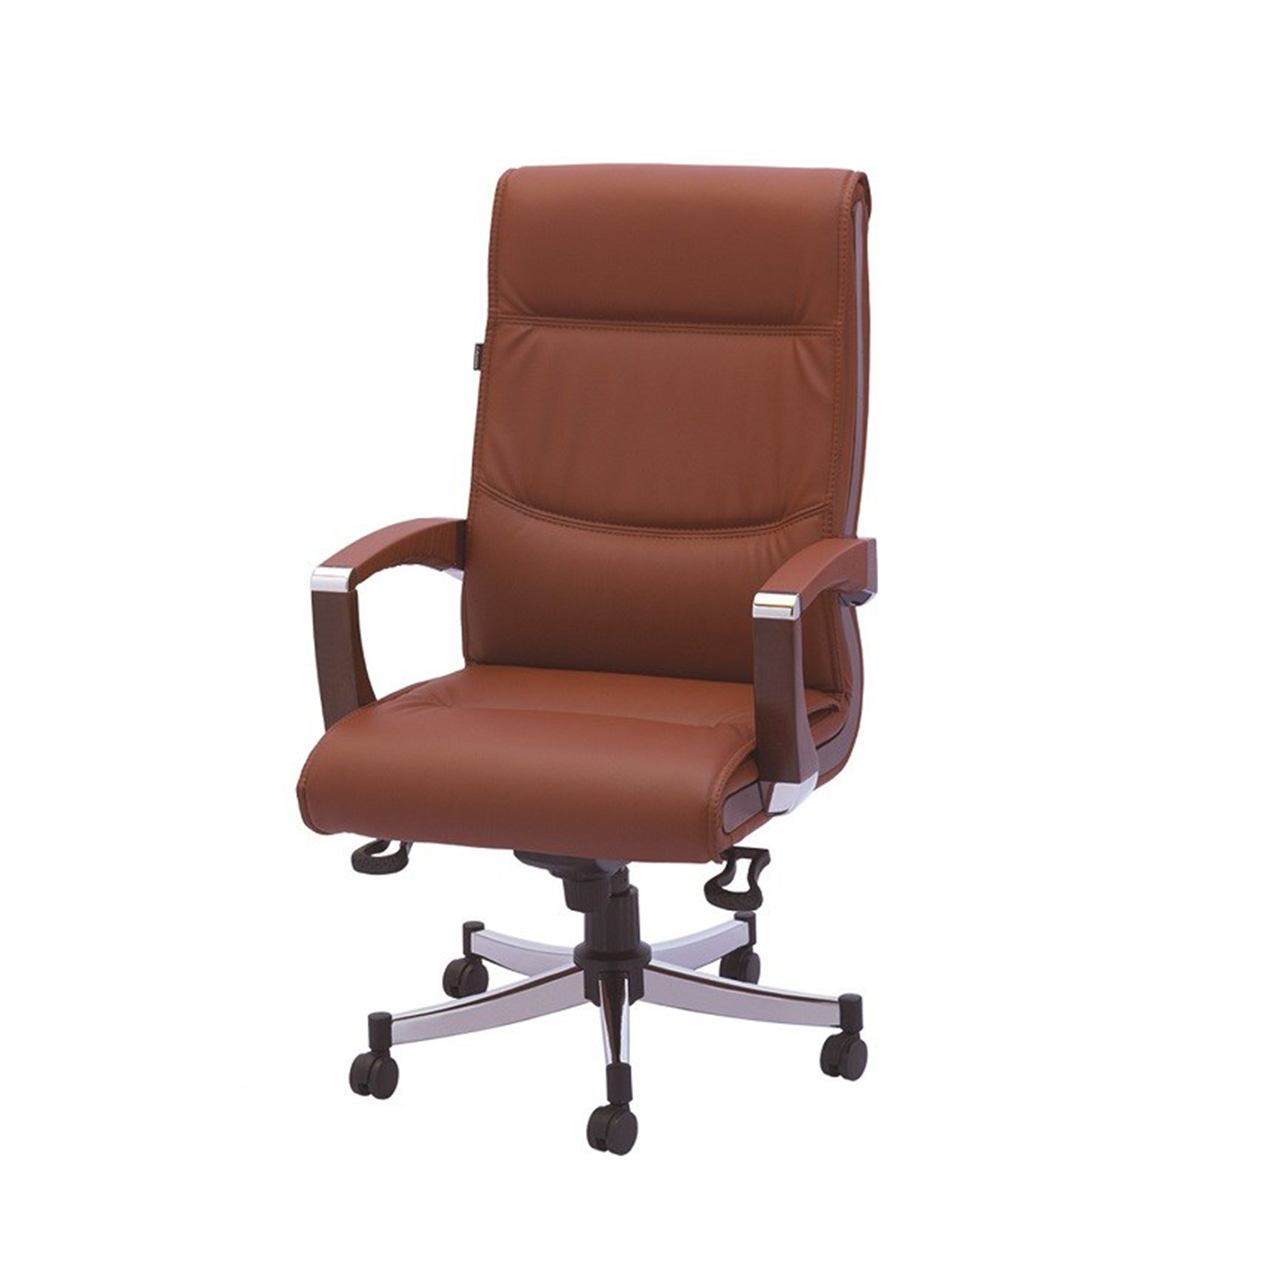 صندلی اداری رایانه صنعت مدل M901 چرمی